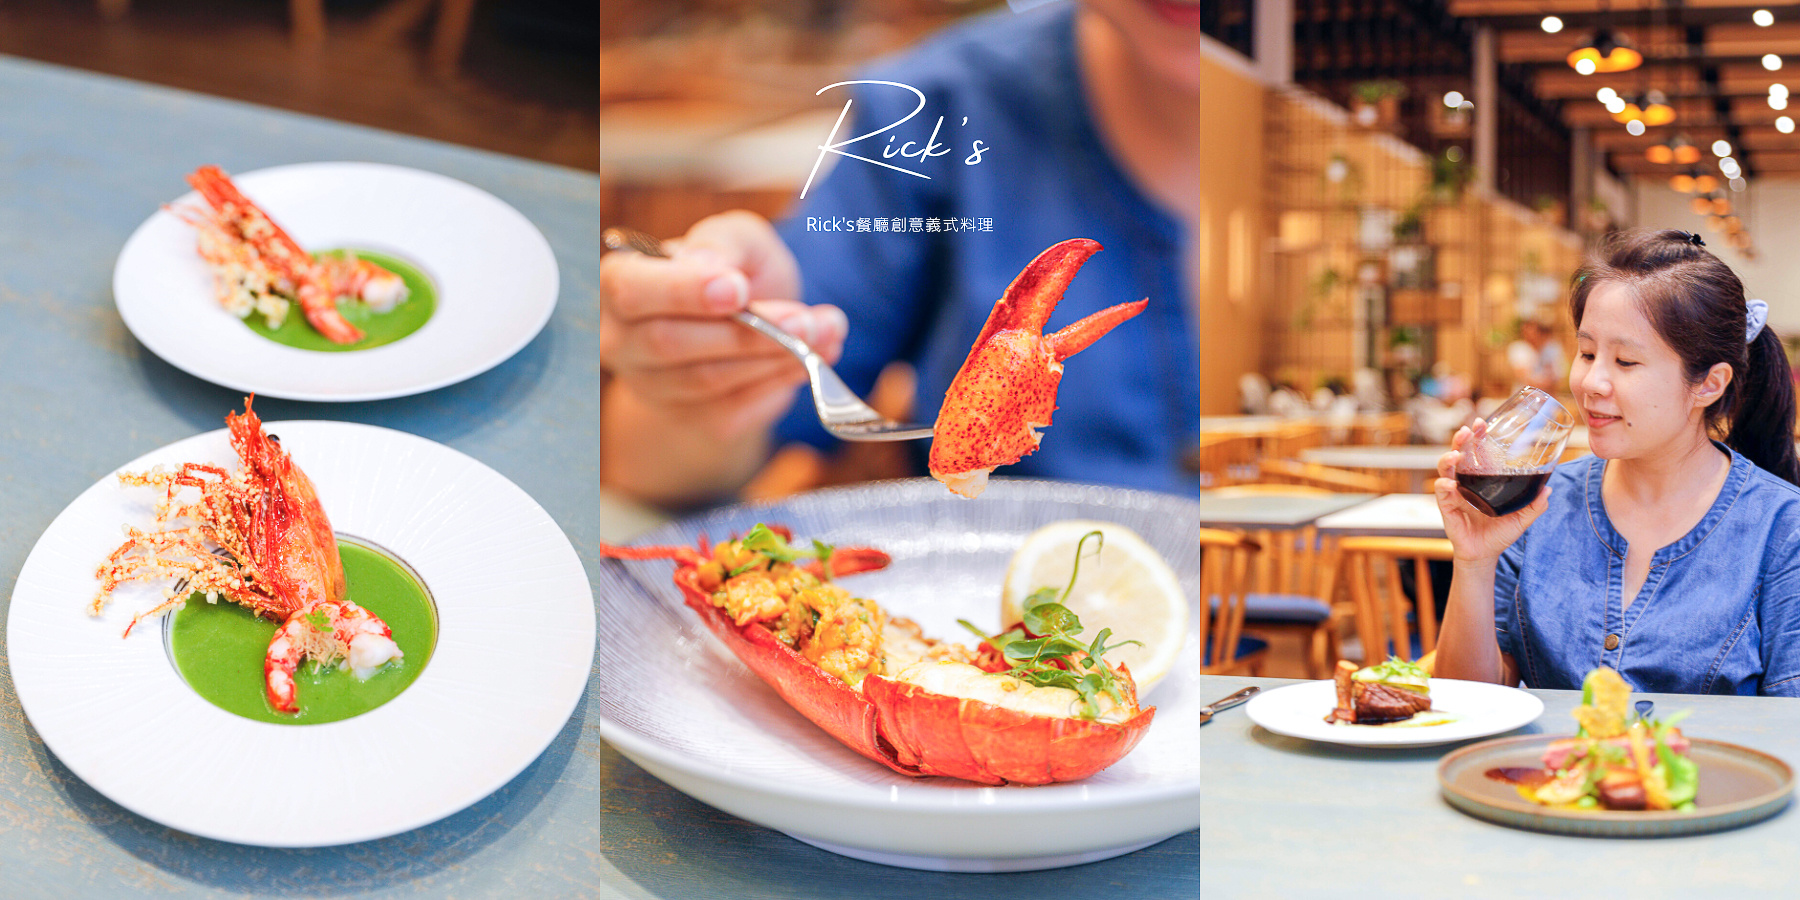 宜蘭礁溪品文旅Rick’s餐廳，輕奢義式創意料理套餐晚宴菜單價格評價